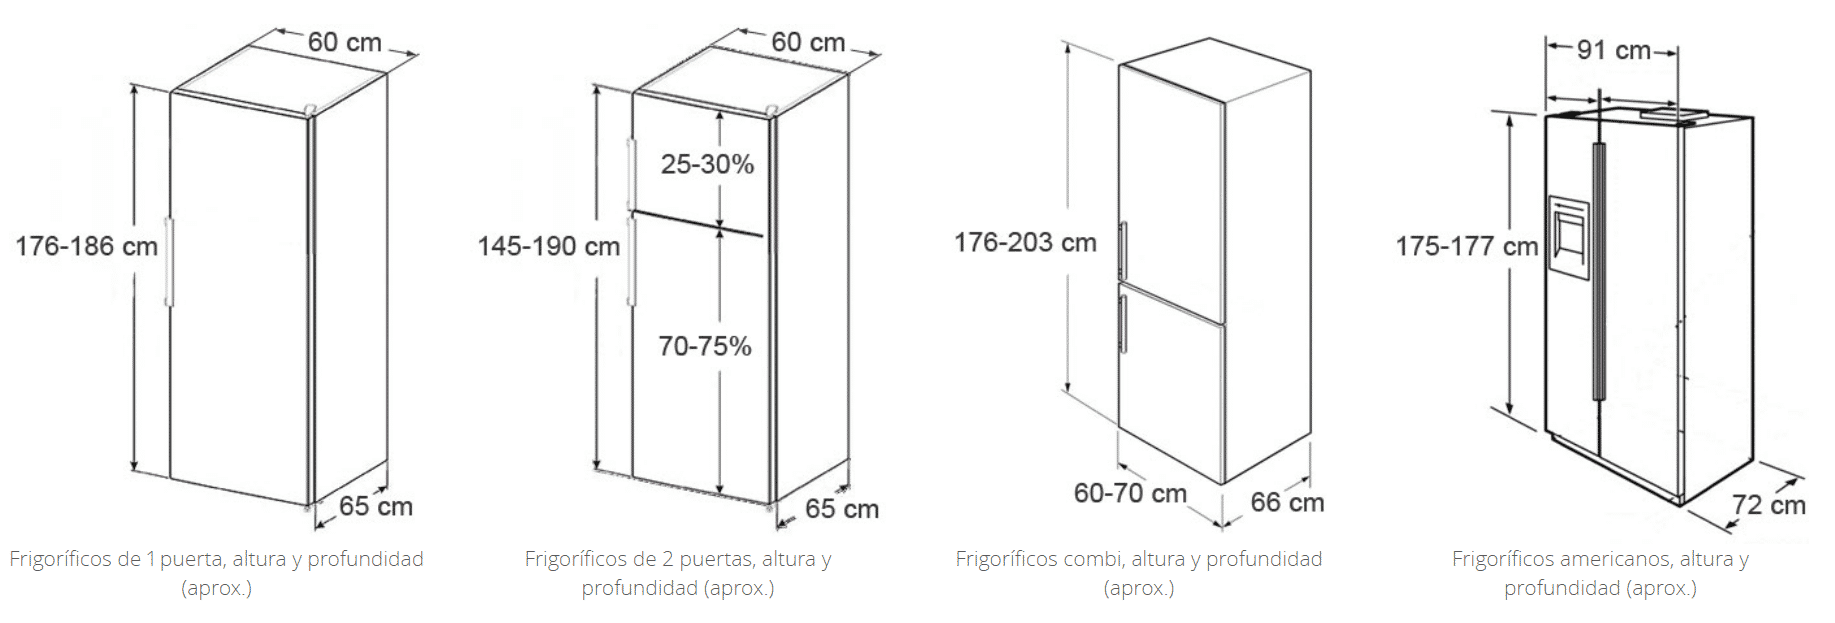 Medidas de Frigoríficos Combi: altura, ancho y fondo